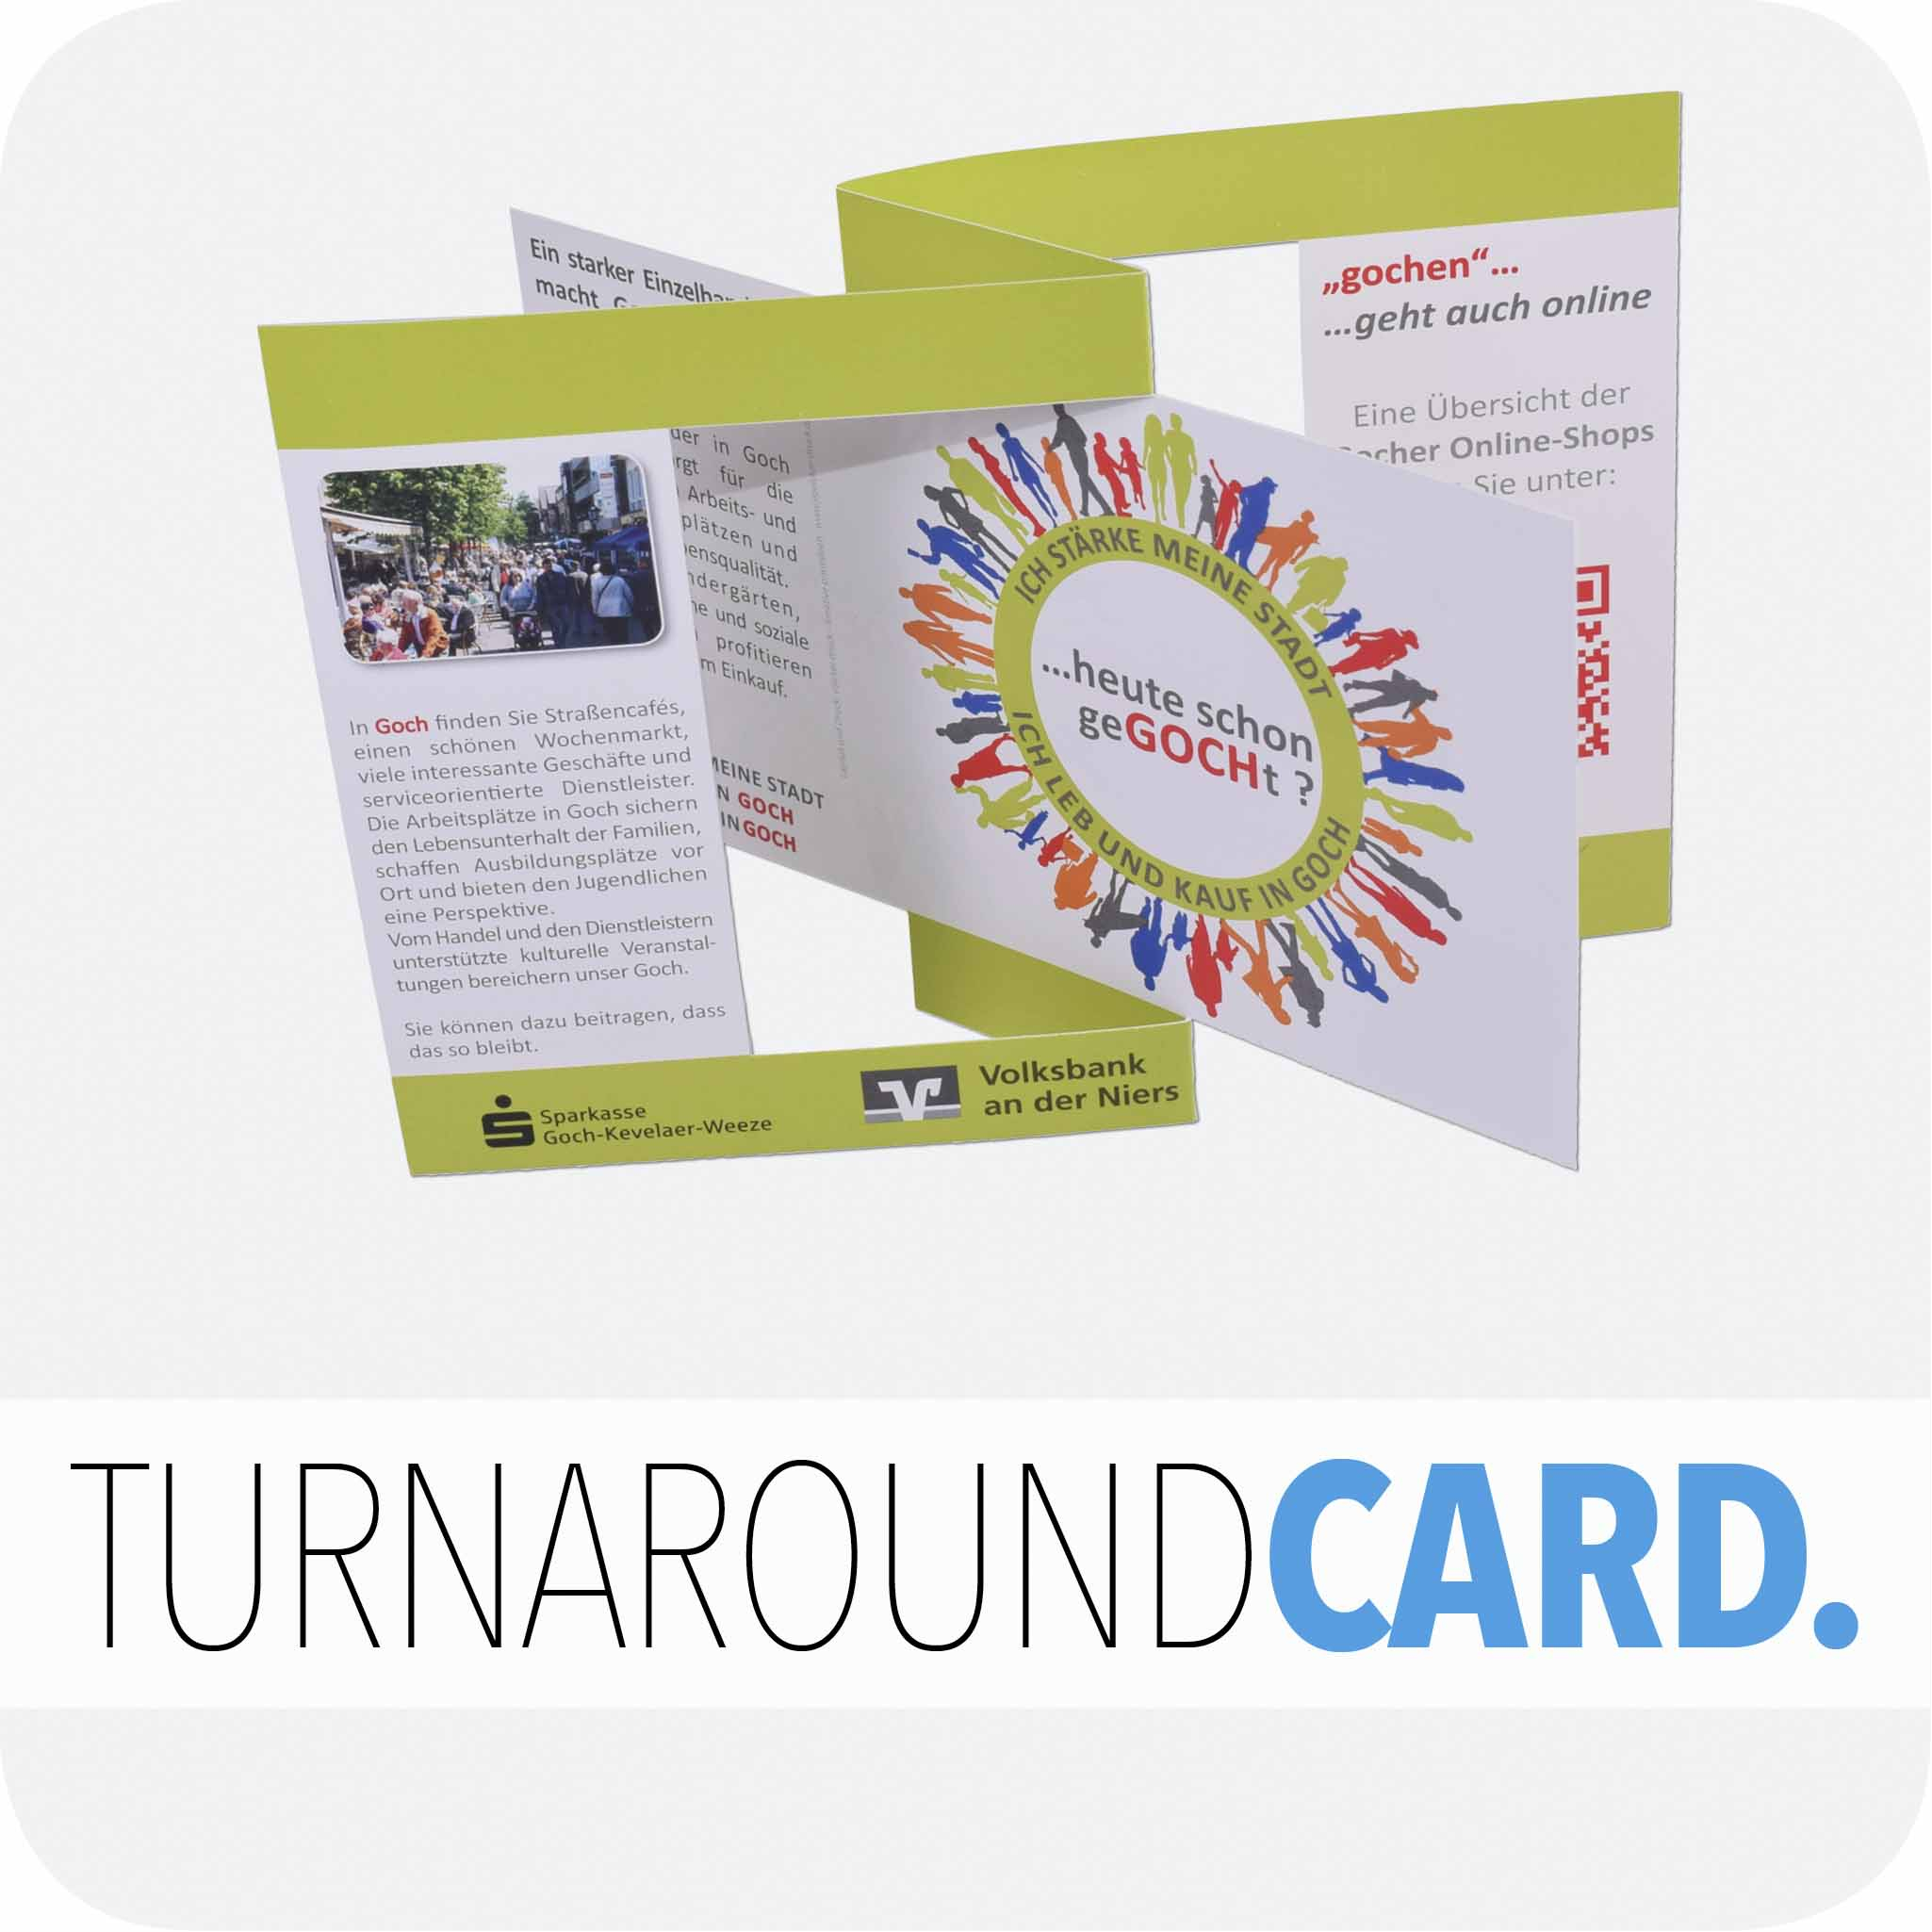 Turnaround card